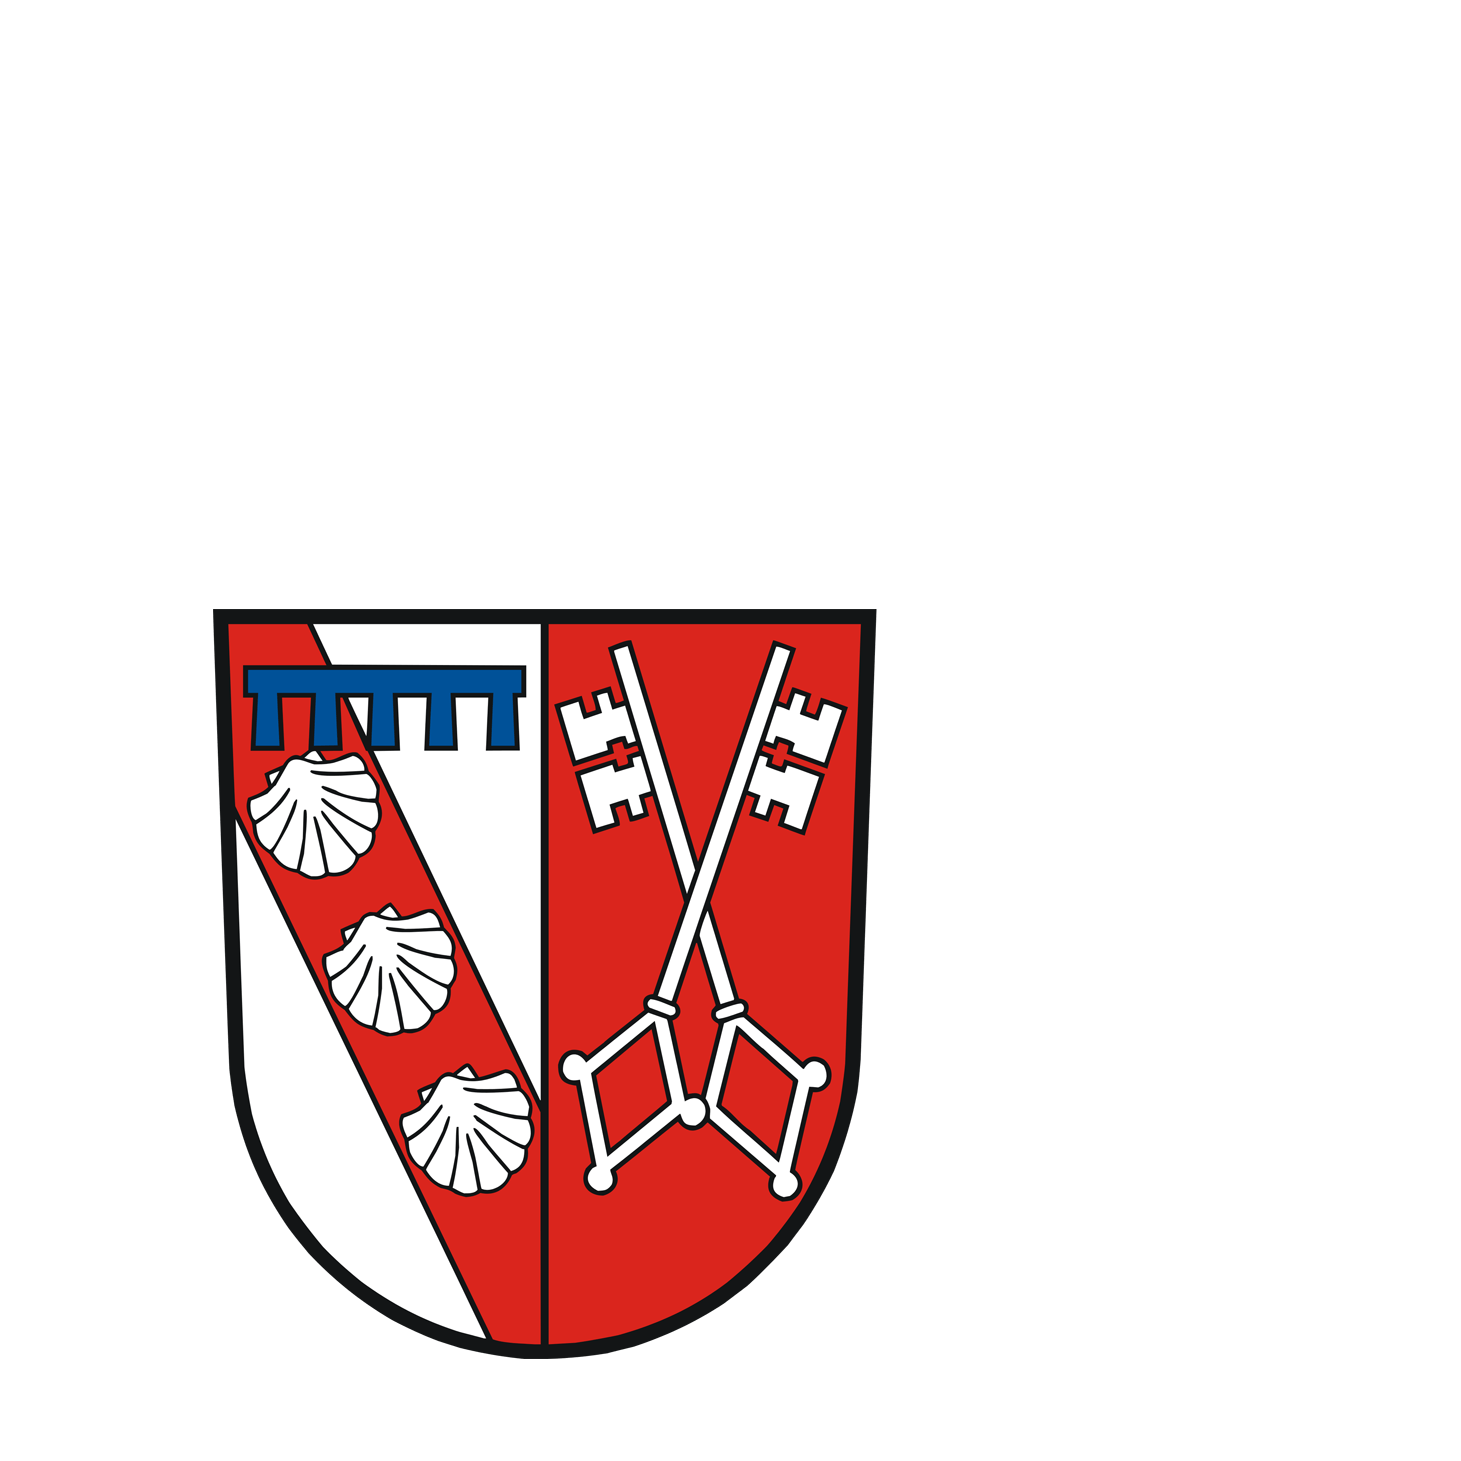 Wappen der Gemeinde Losheim am See - © Gemeinde Losheim am See